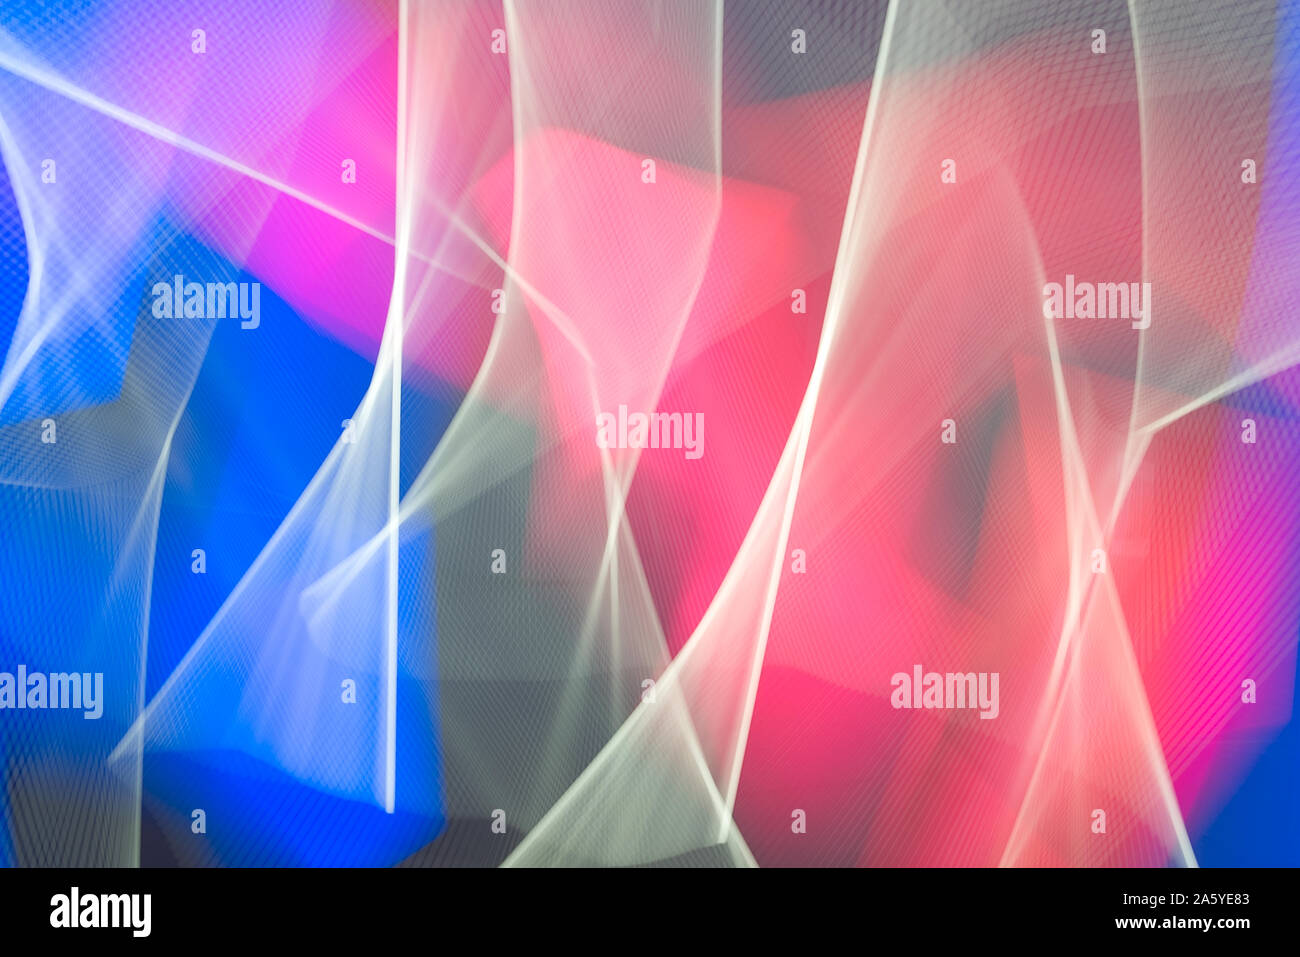 Zusammenfassung Hintergrund mit Neonleuchten in fast Motion Blur und bunten futuristischen Rahmen Konzept. Digitales Design und leere Raum für Editor's Text. Stockfoto